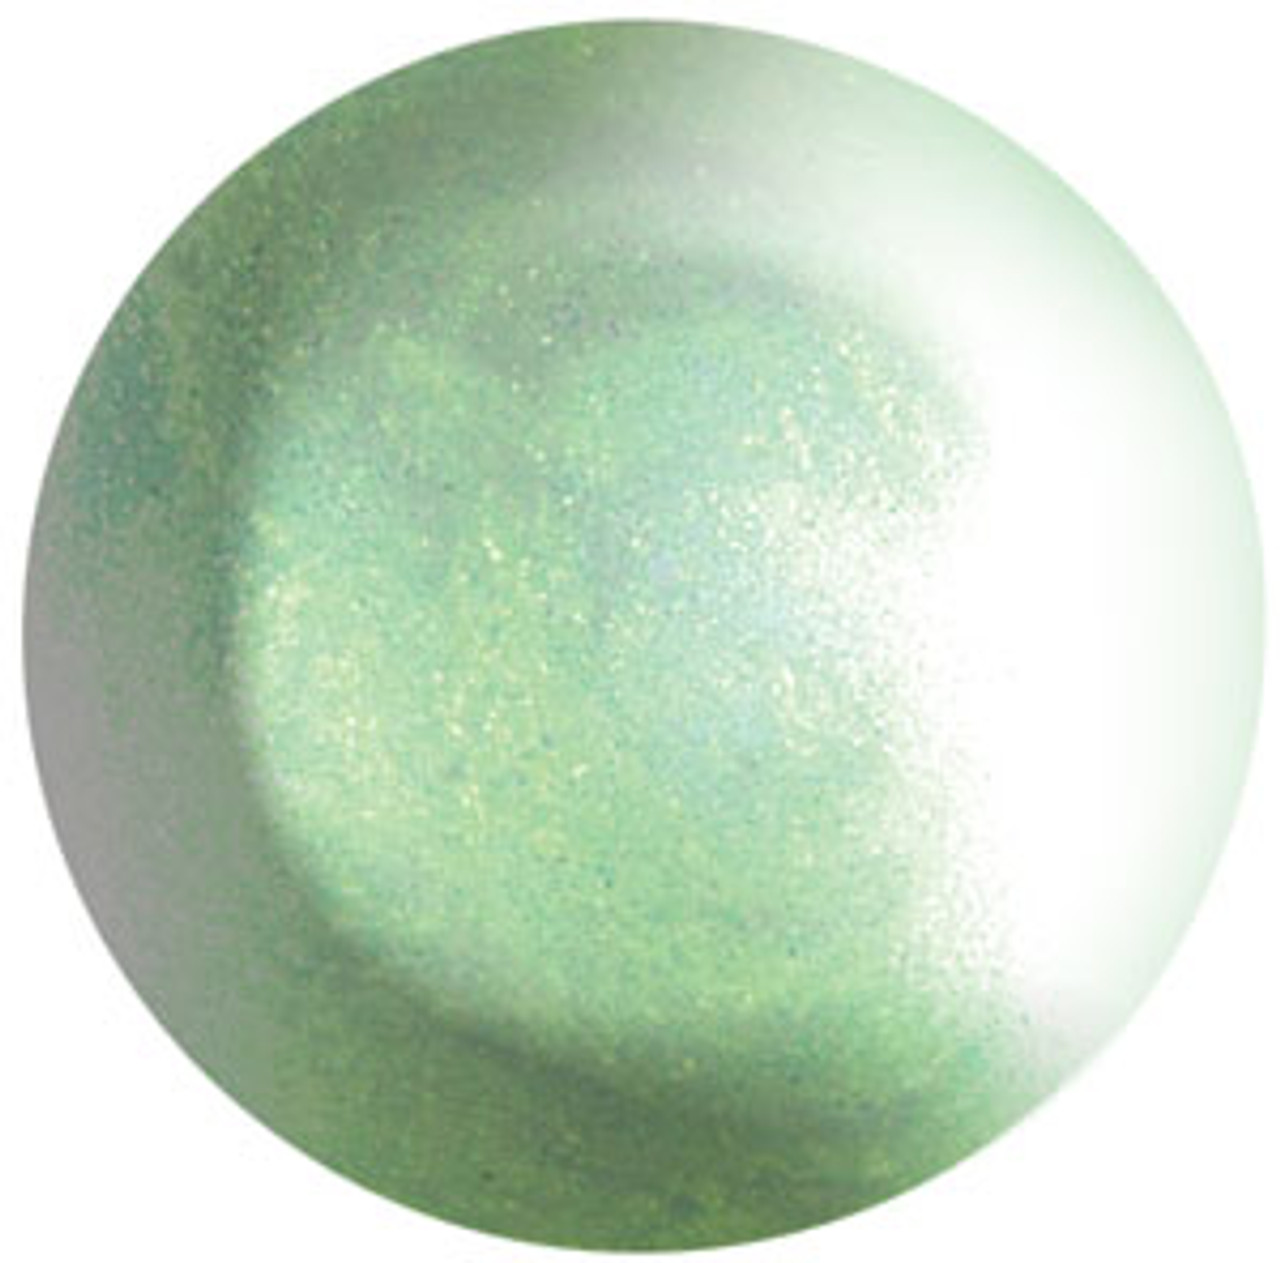 ibd Gel Polish: Emerald - .25oz/7g